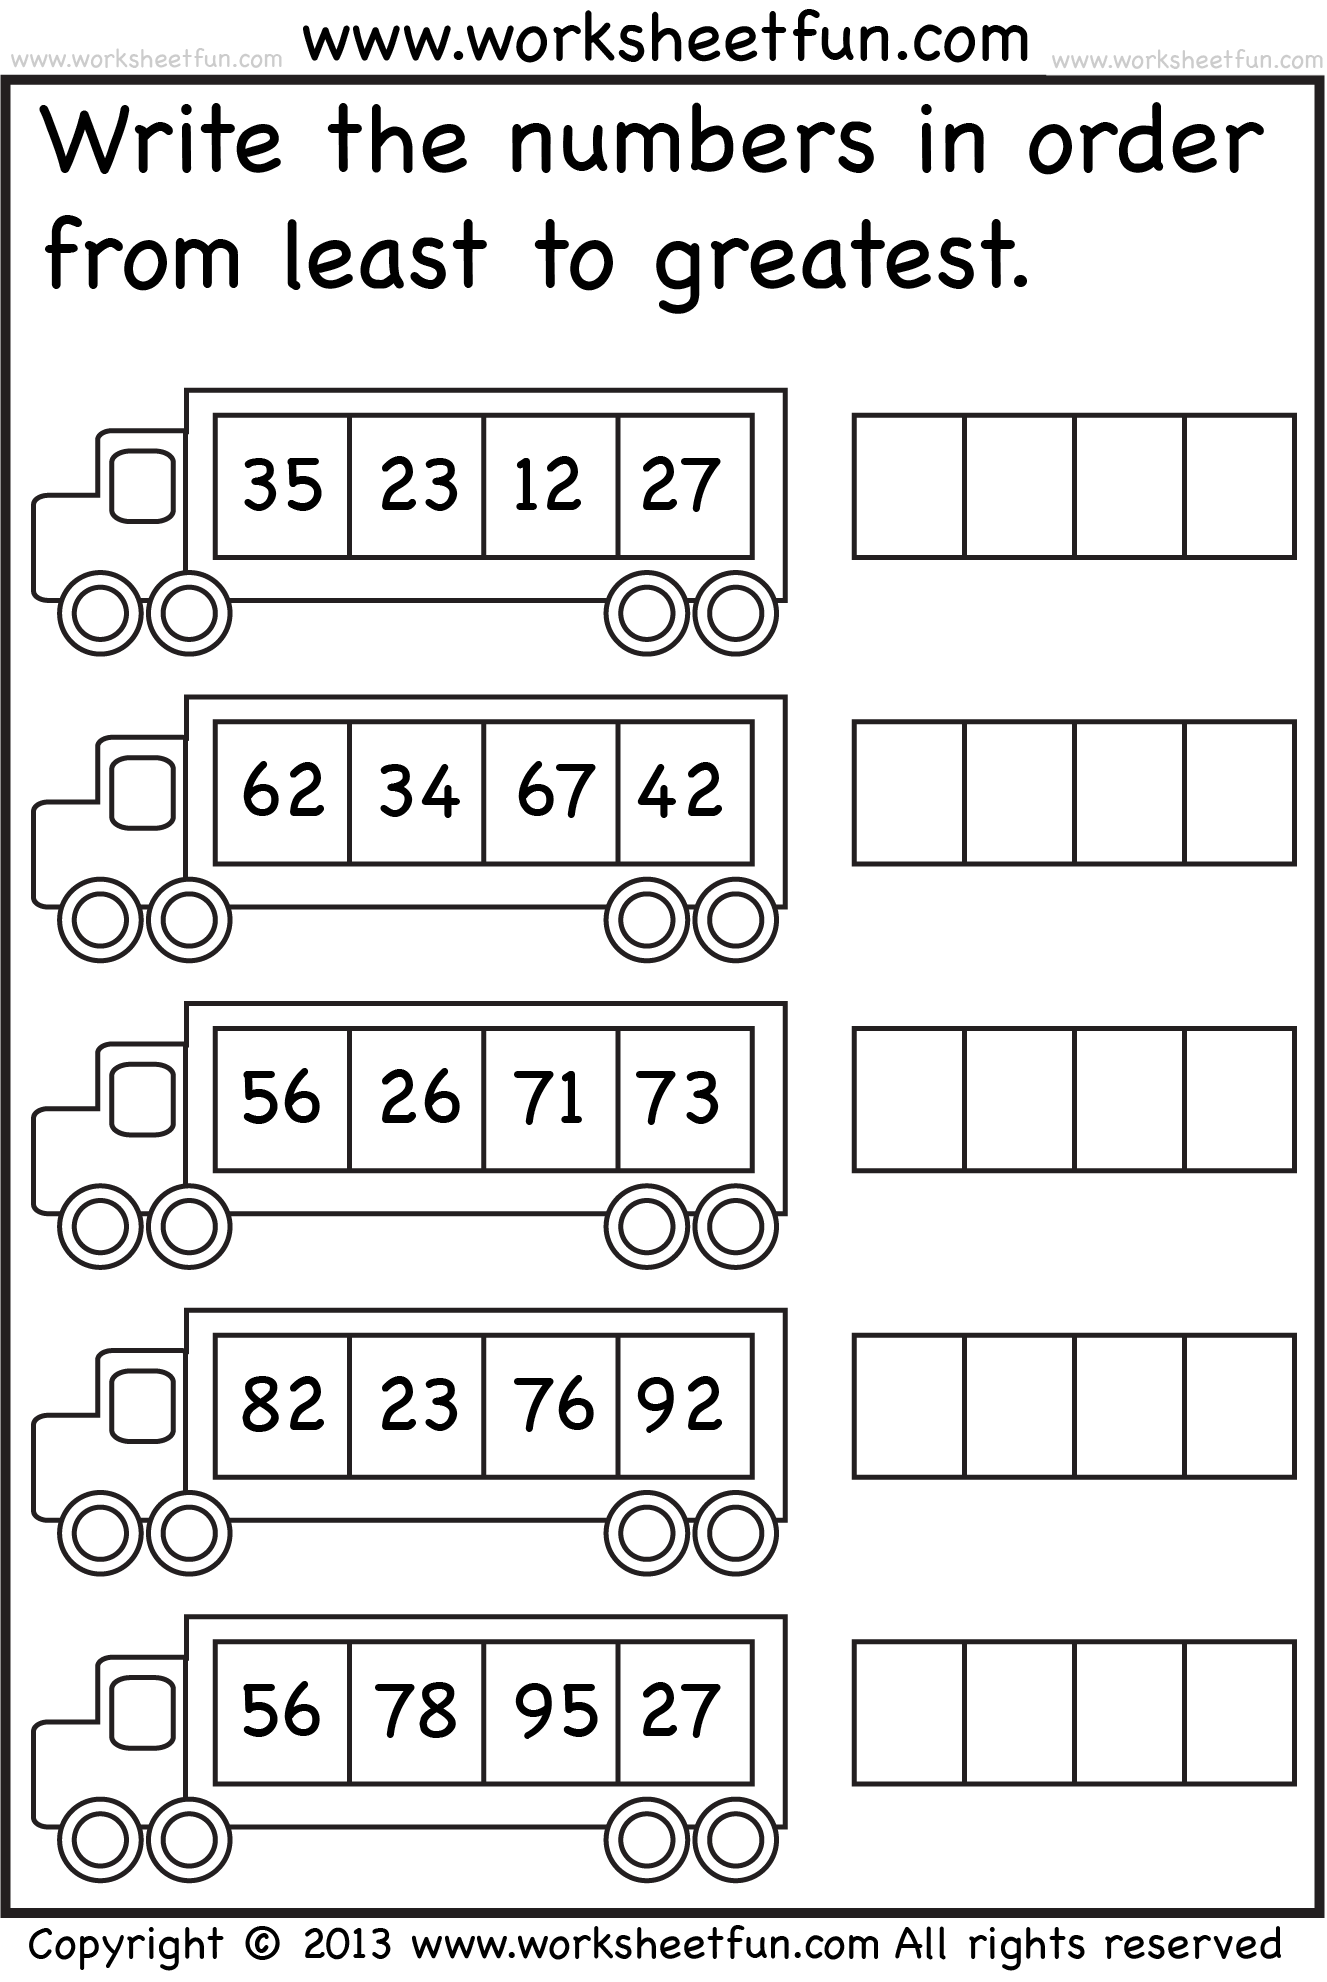 number-order-kindergarten-free-printable-worksheets-numbers-1-20